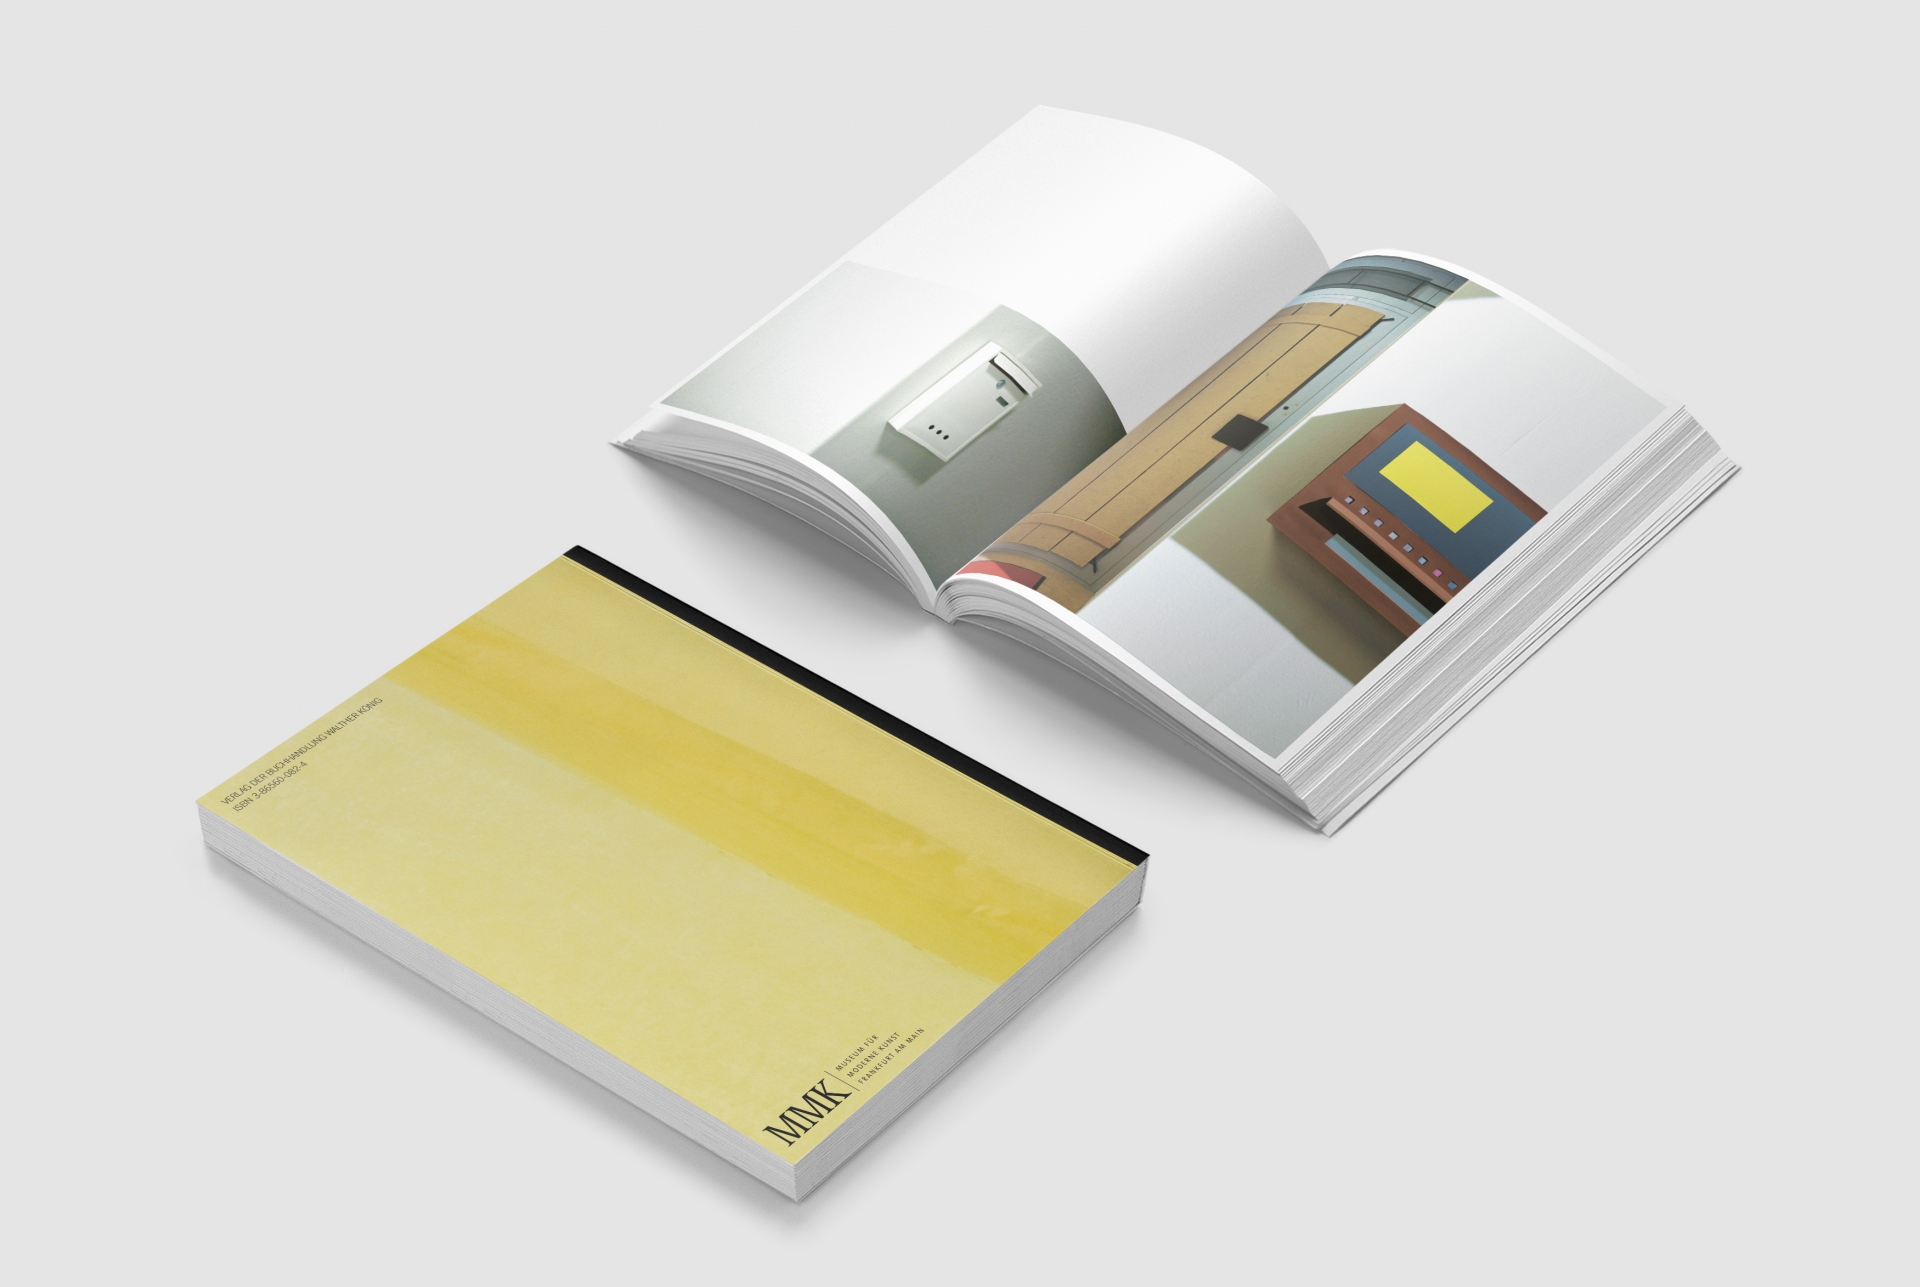 Buchgestaltung Ausstellungskatalog - Thomas Demand Klause - Museum für Moderne Kunst - Cover und Doppelseite